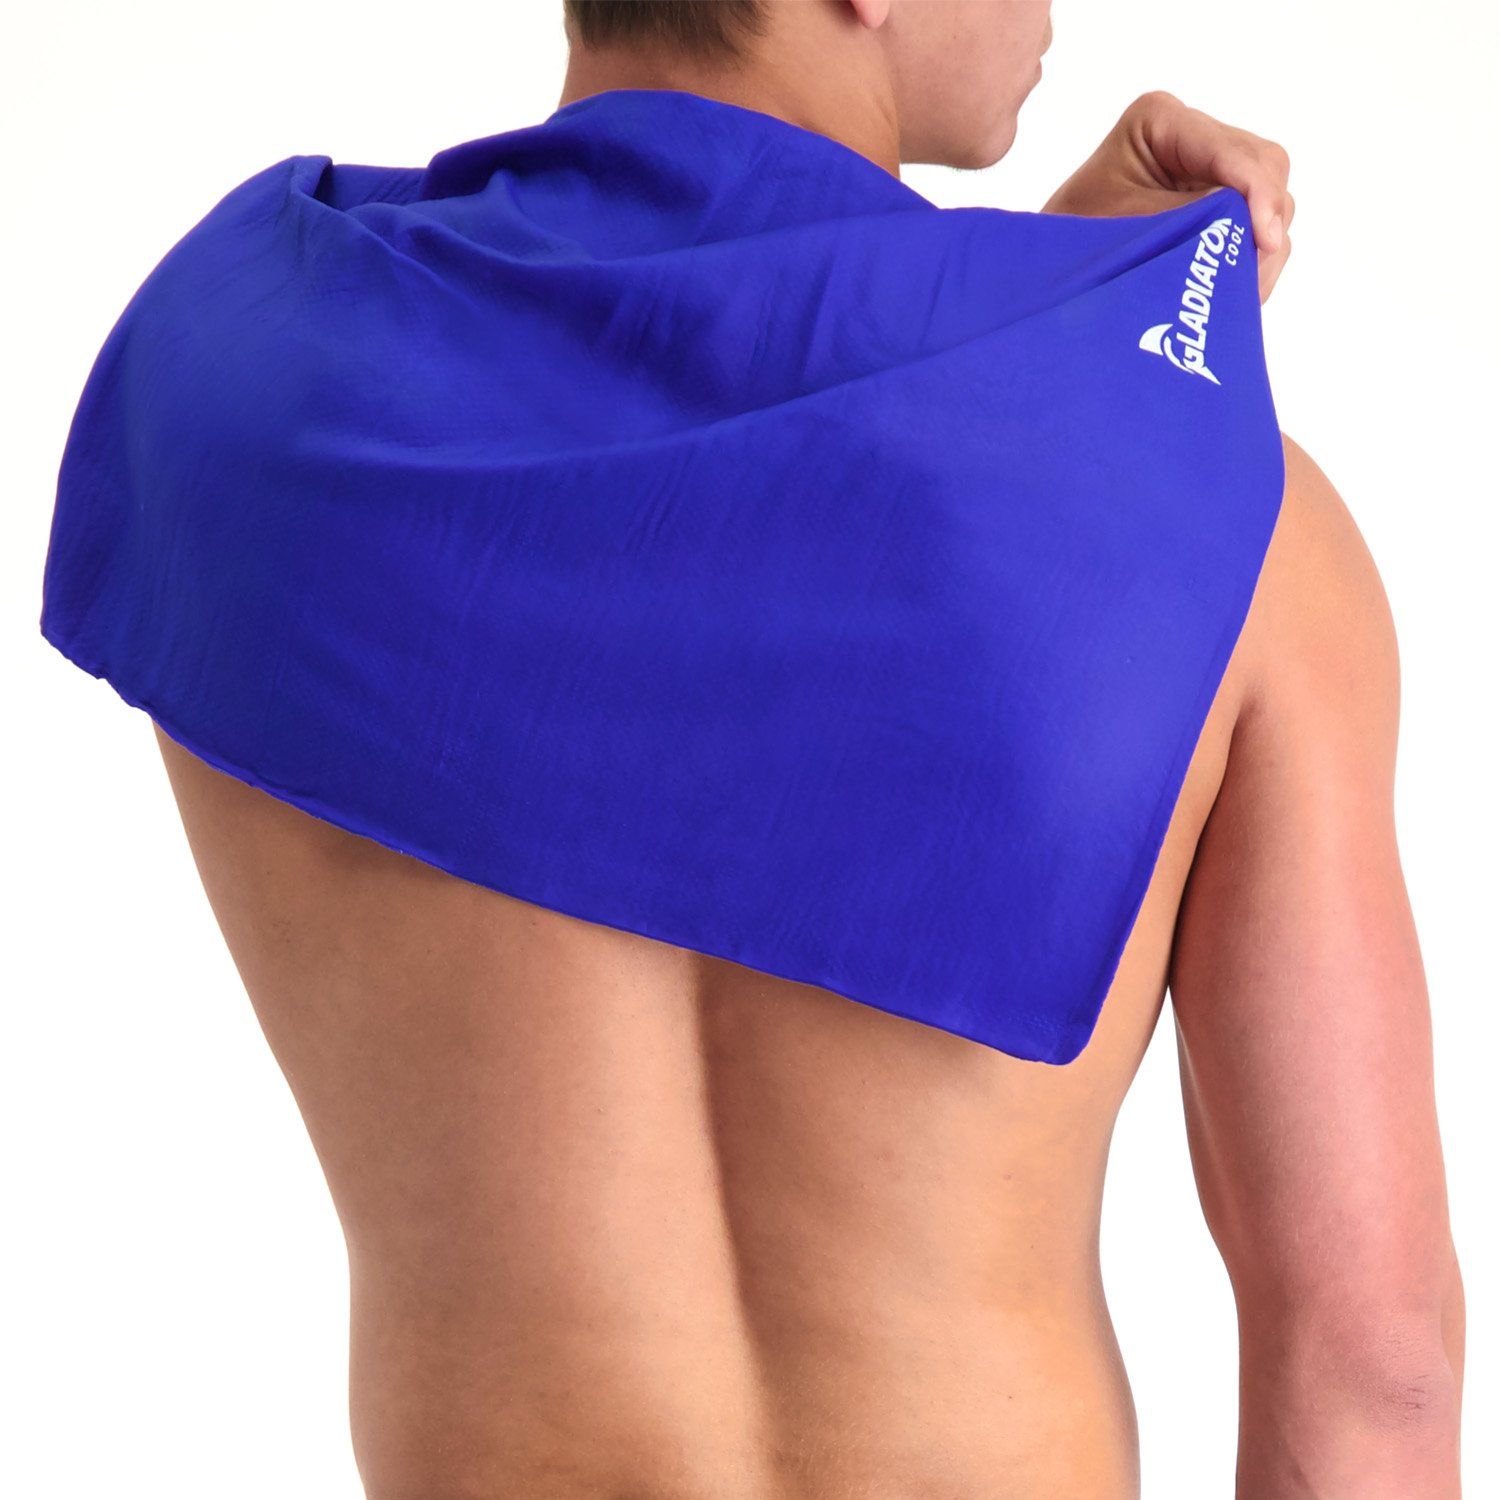 Gladiator Cool - Ręcznik chłodzący zakładany na plecy